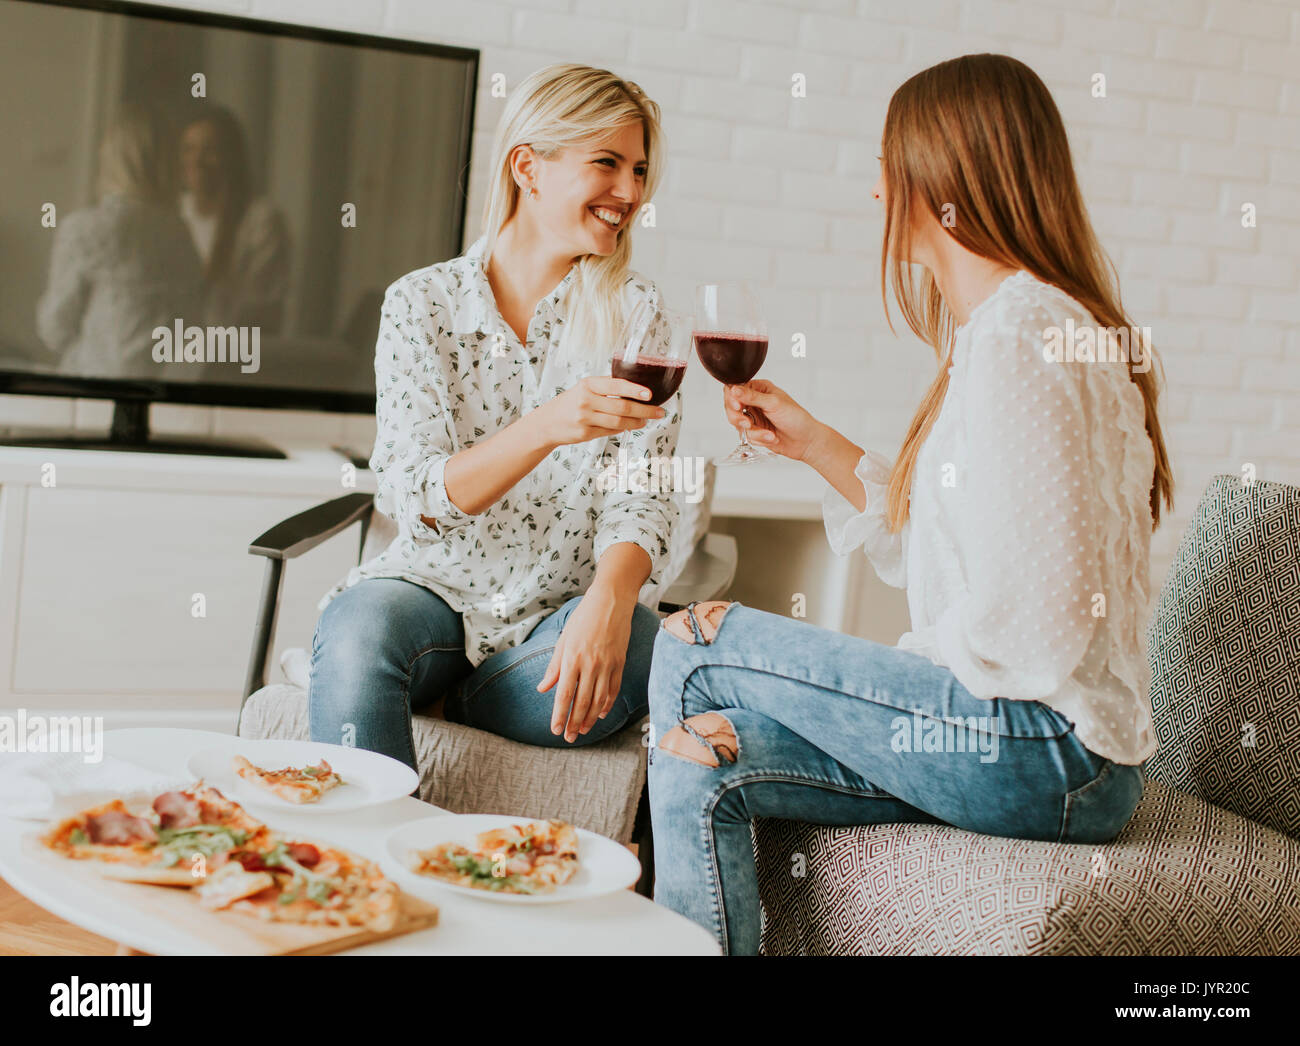 Хотеть сидеть предложение. Ест пиццу пьет вино. Женщины под деревом пьют вино едят апельсин.